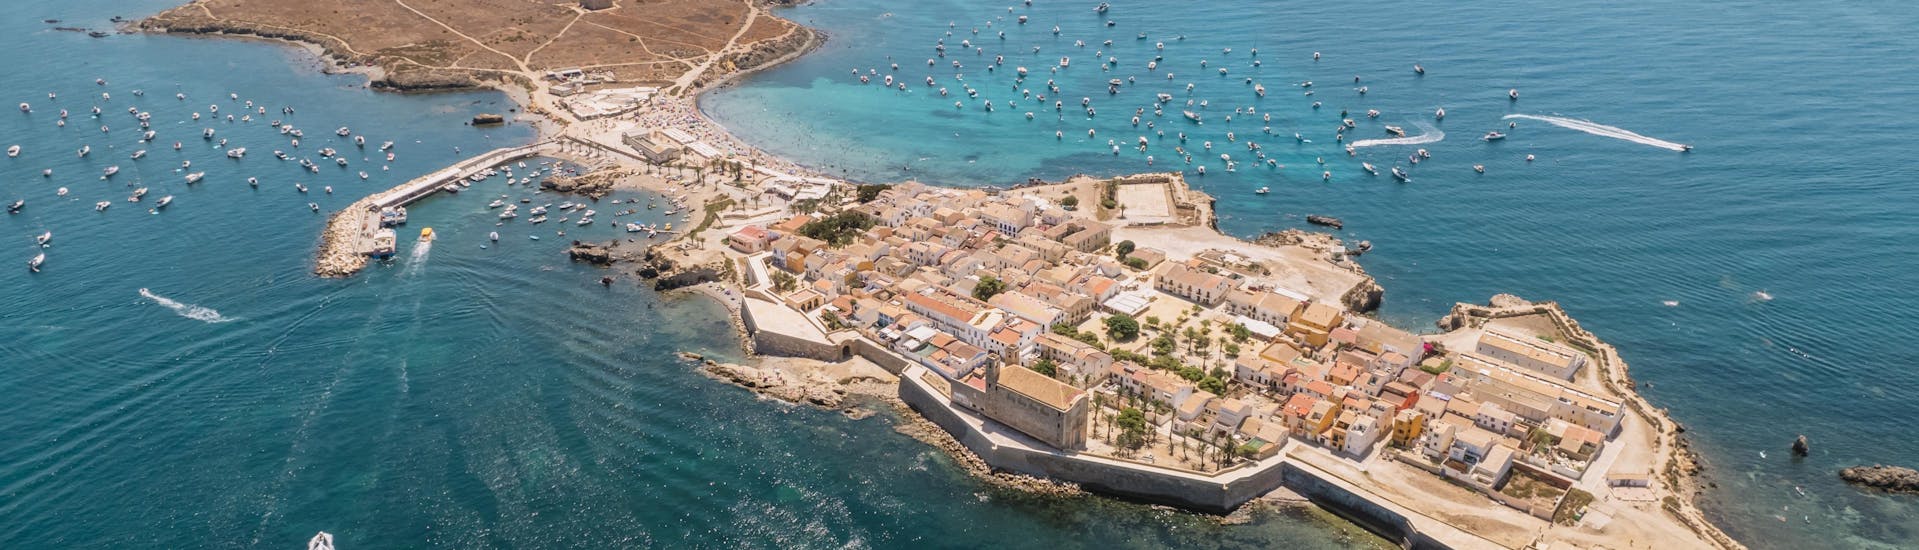 Vista aérea de barcos llegando a la isla de Tabarca en Alicante.